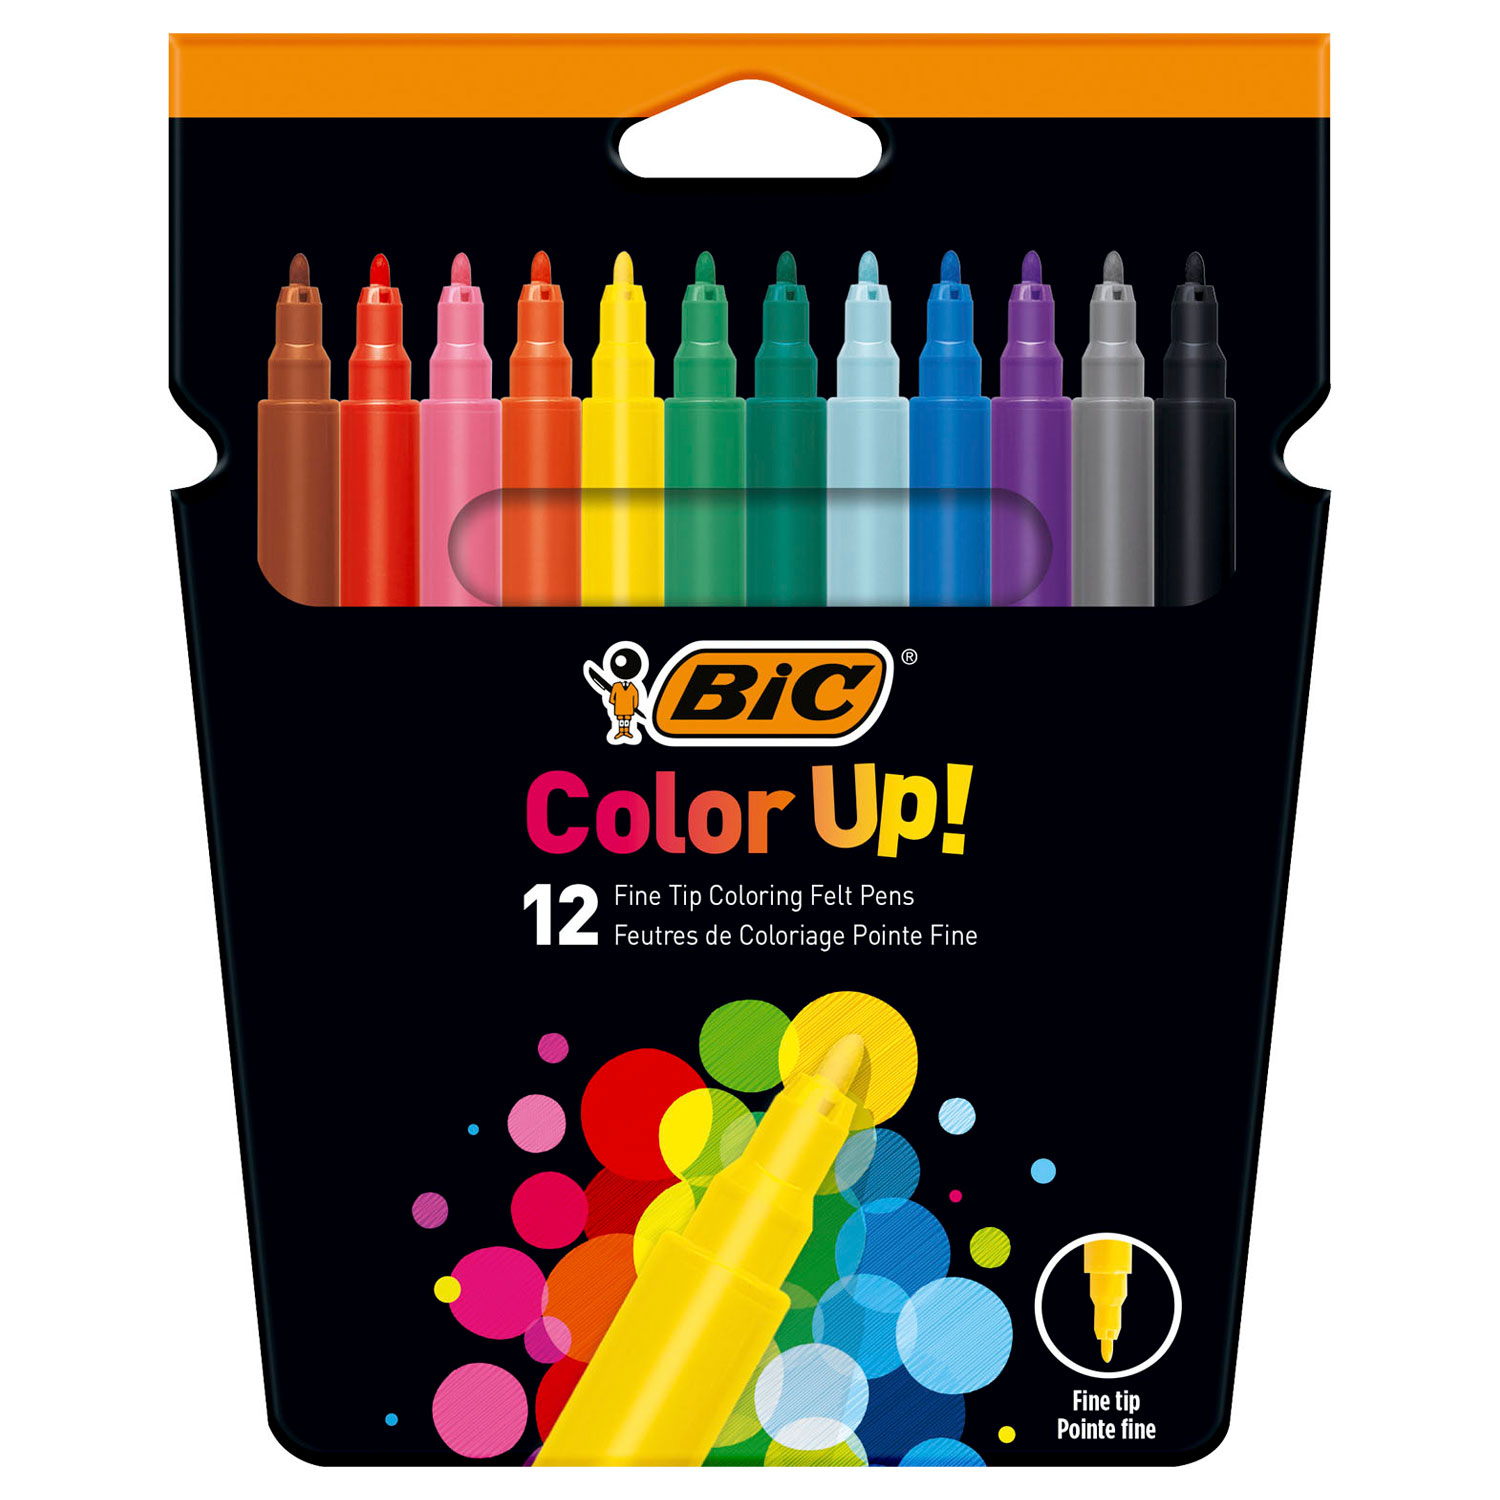 Color Up pour les enfants BIC ! Feutres de coloriage, 12 pcs.